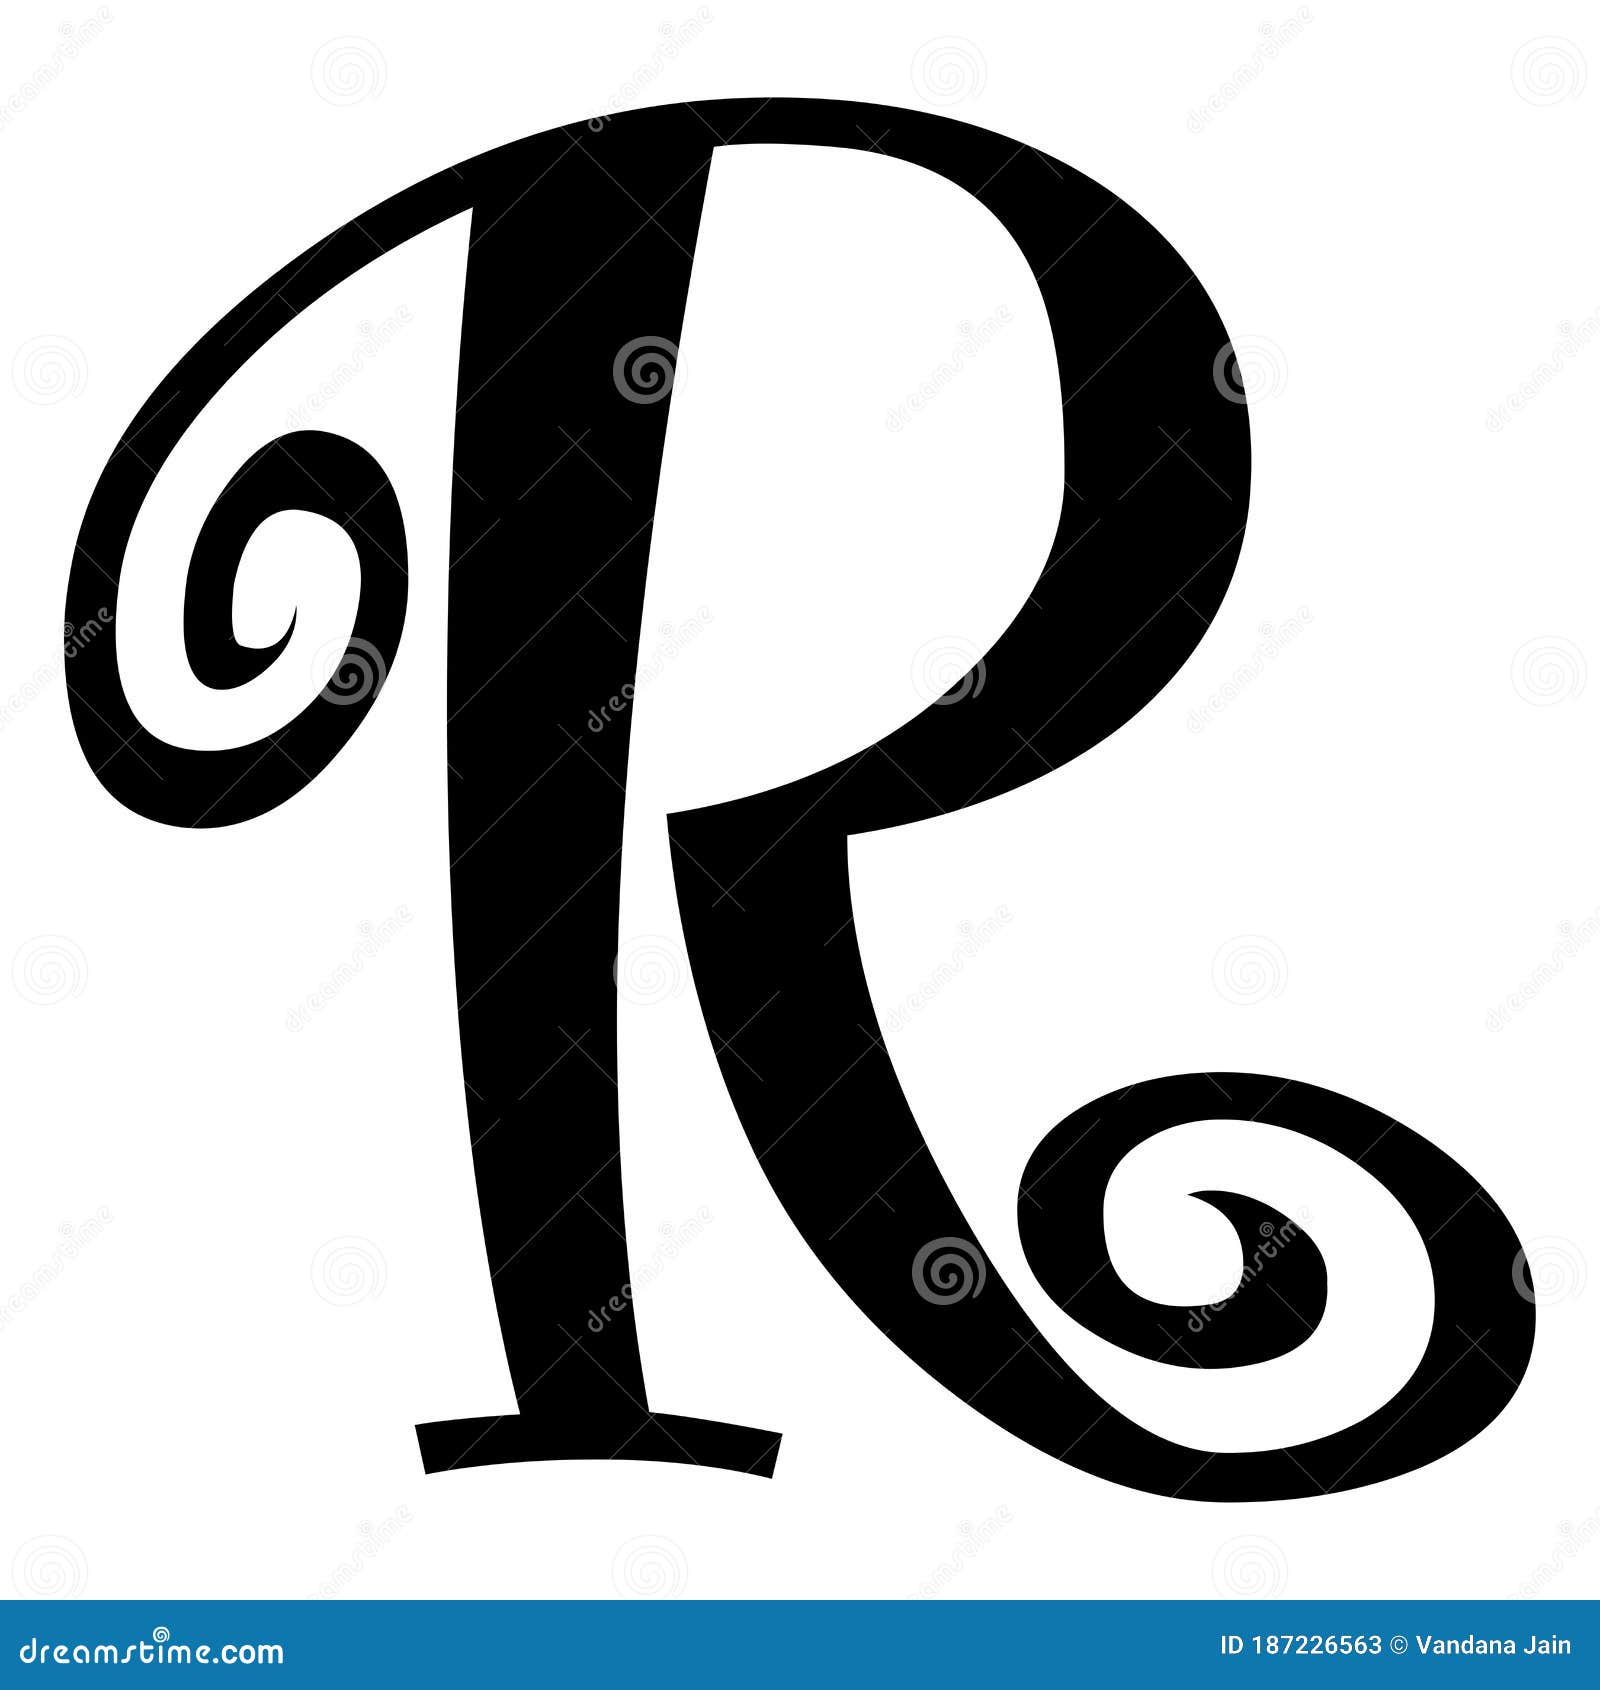 Alphabet Symbol - Stylish Letter  Font Symbol of   on White Background. Stock Illustration - Illustration of colorful,  isolated: 187226563